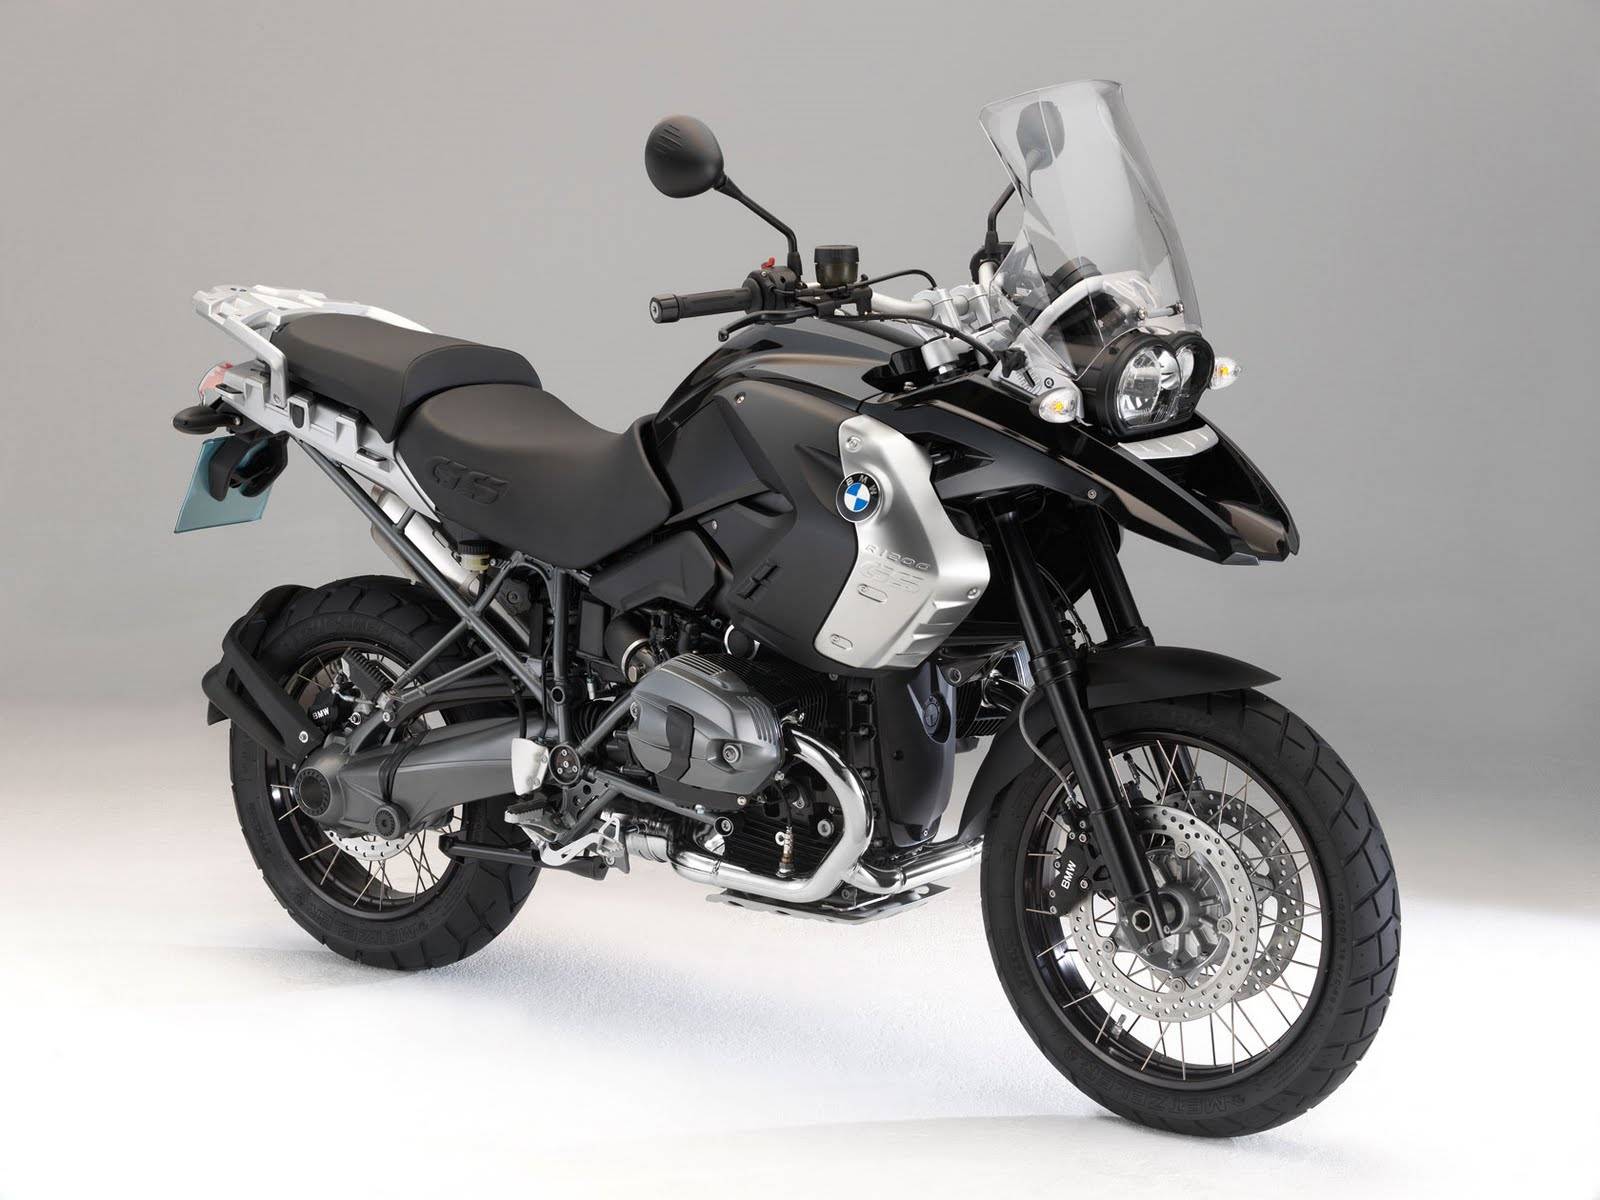 Bmw r1200gs — лучший мотоцикл из когда-либо созданных?